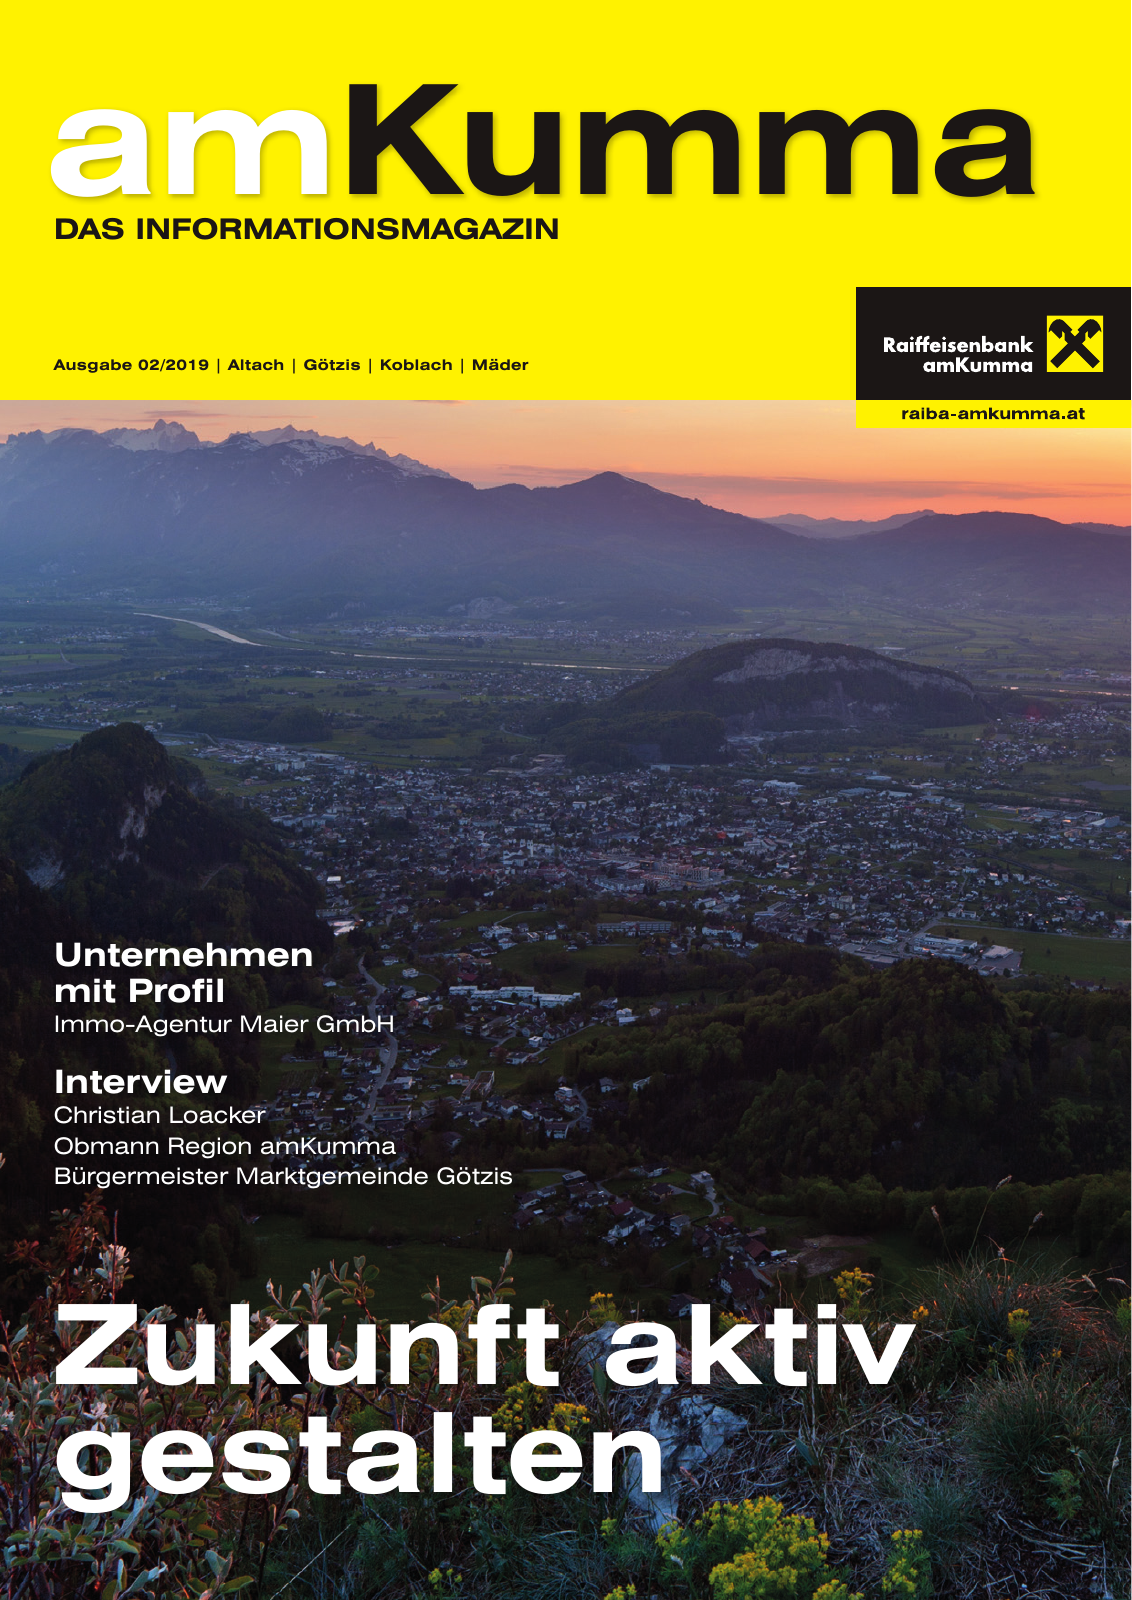 Vorschau Mitgliederzeitung amKumma Herbst 2019 Seite 1